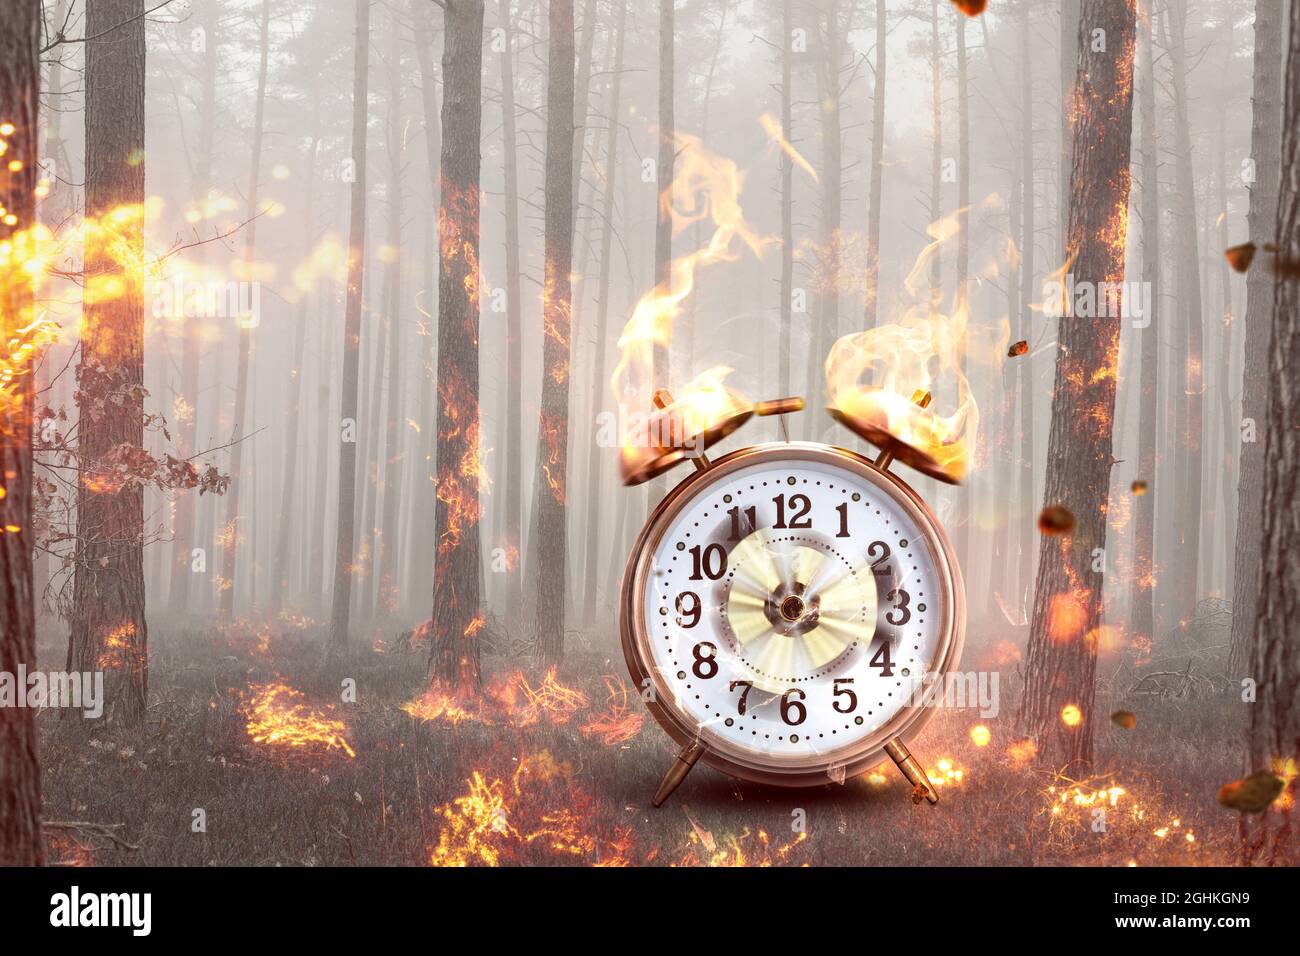 Wecker in einem brennenden Wald - Konzept des Klimawandels Stockfoto